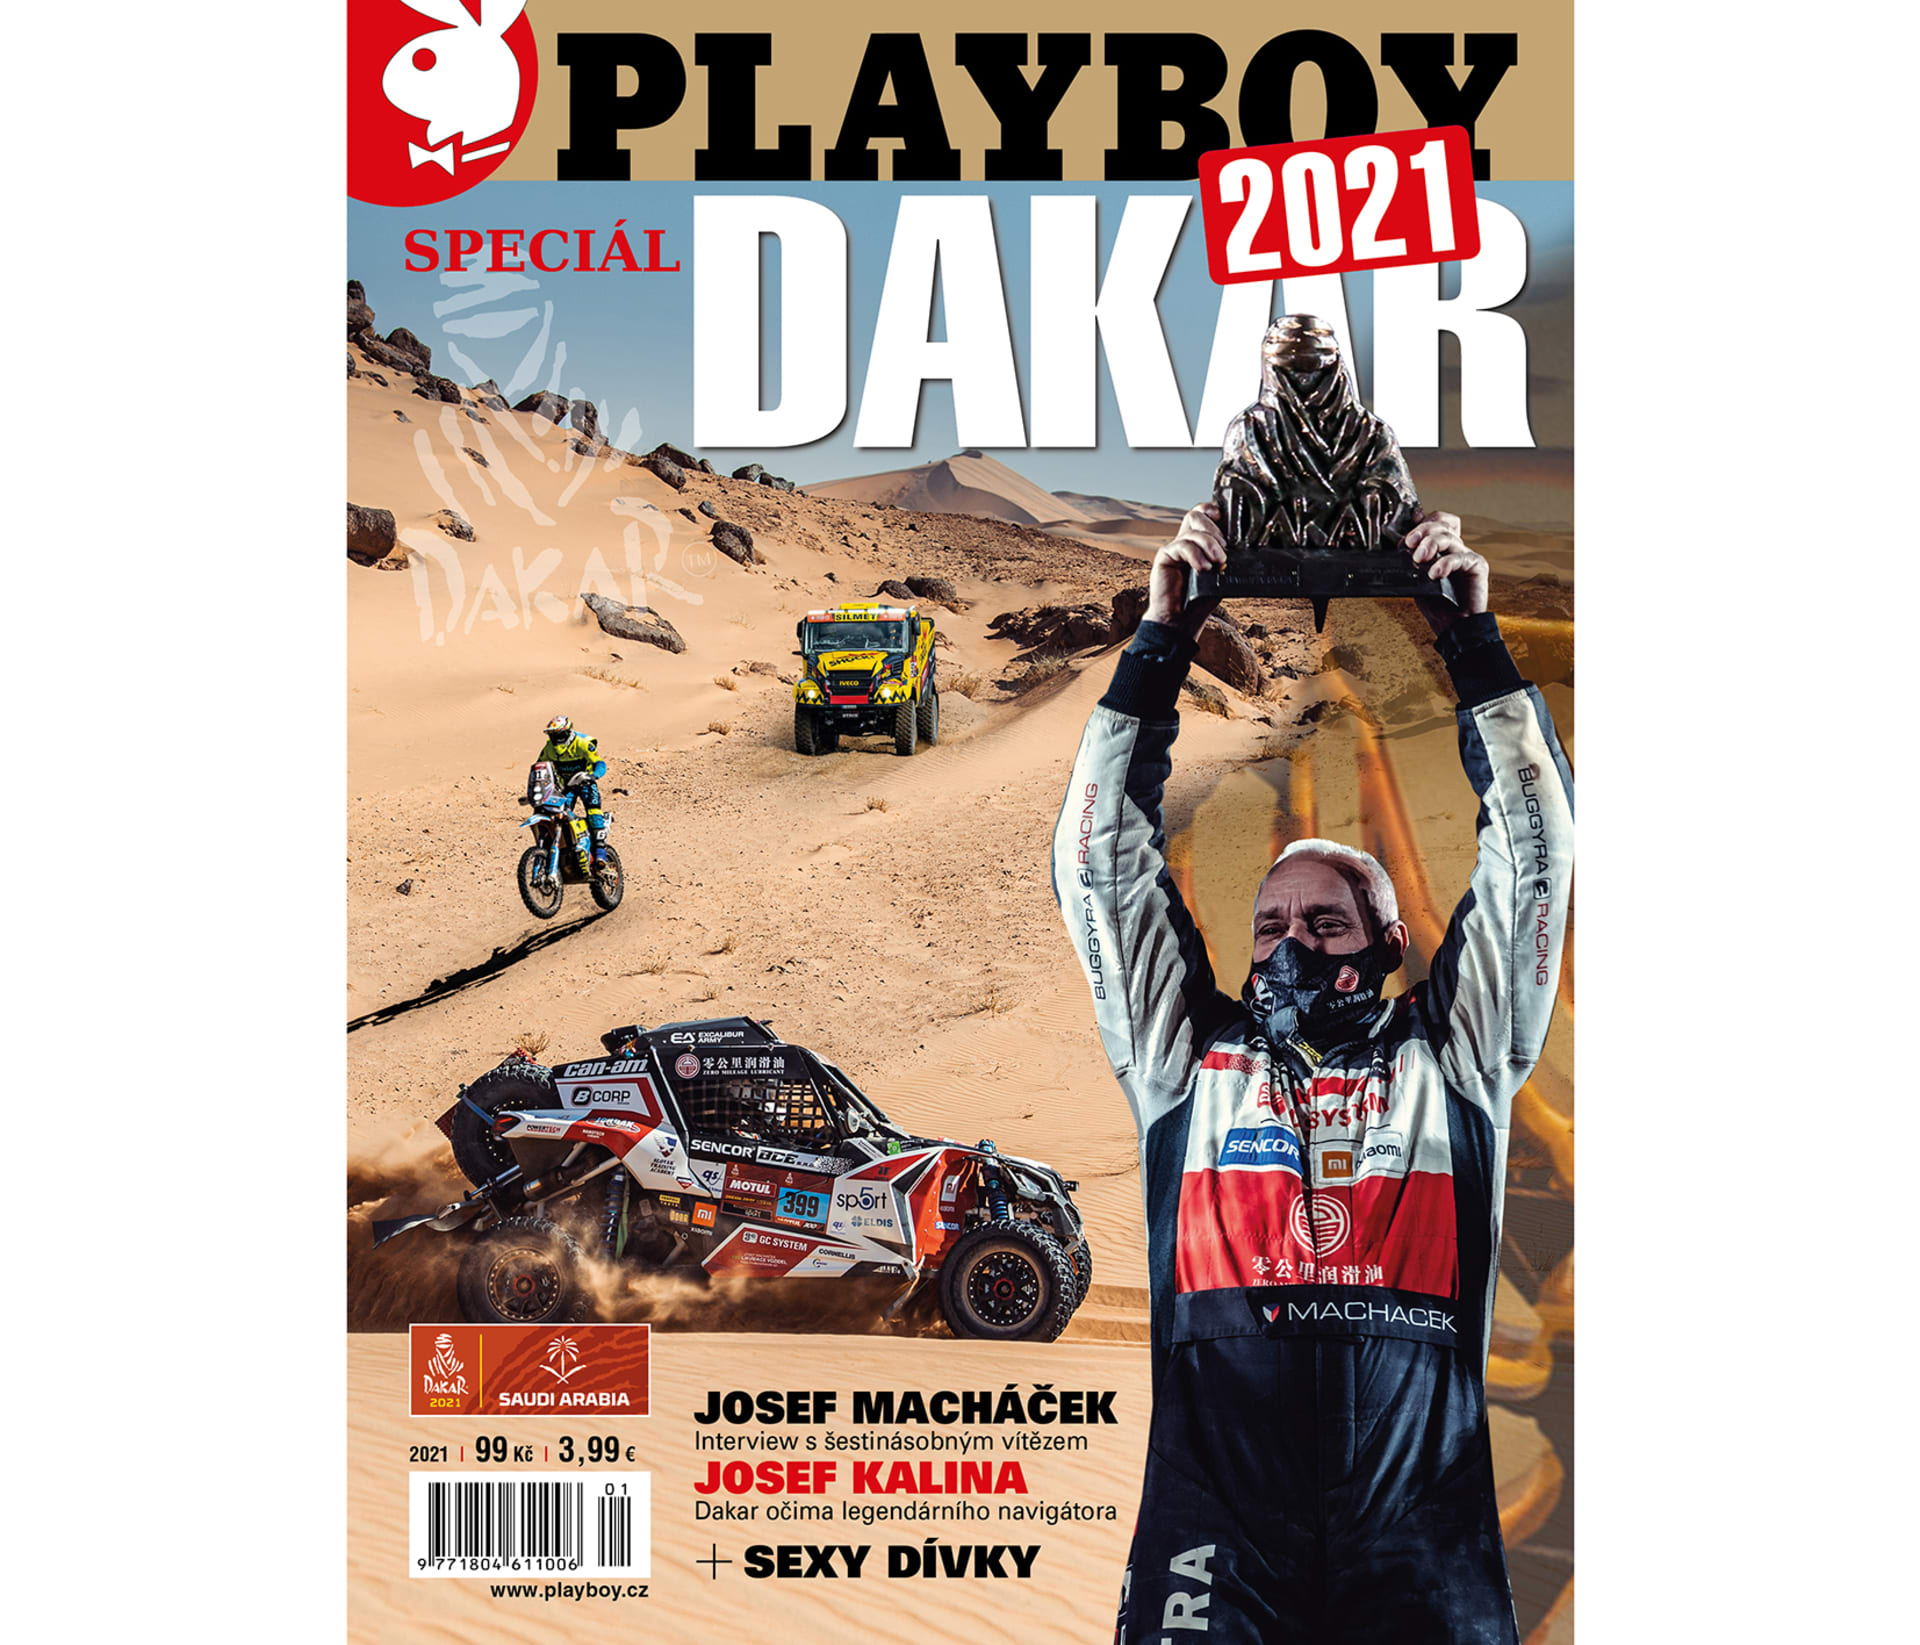 Vše o letošním ročníku nejslavnějšího a nejtěžšího dálkového závodu planety si přečtete ve speciálu Playboy Dakar 2021, který právě vychází.